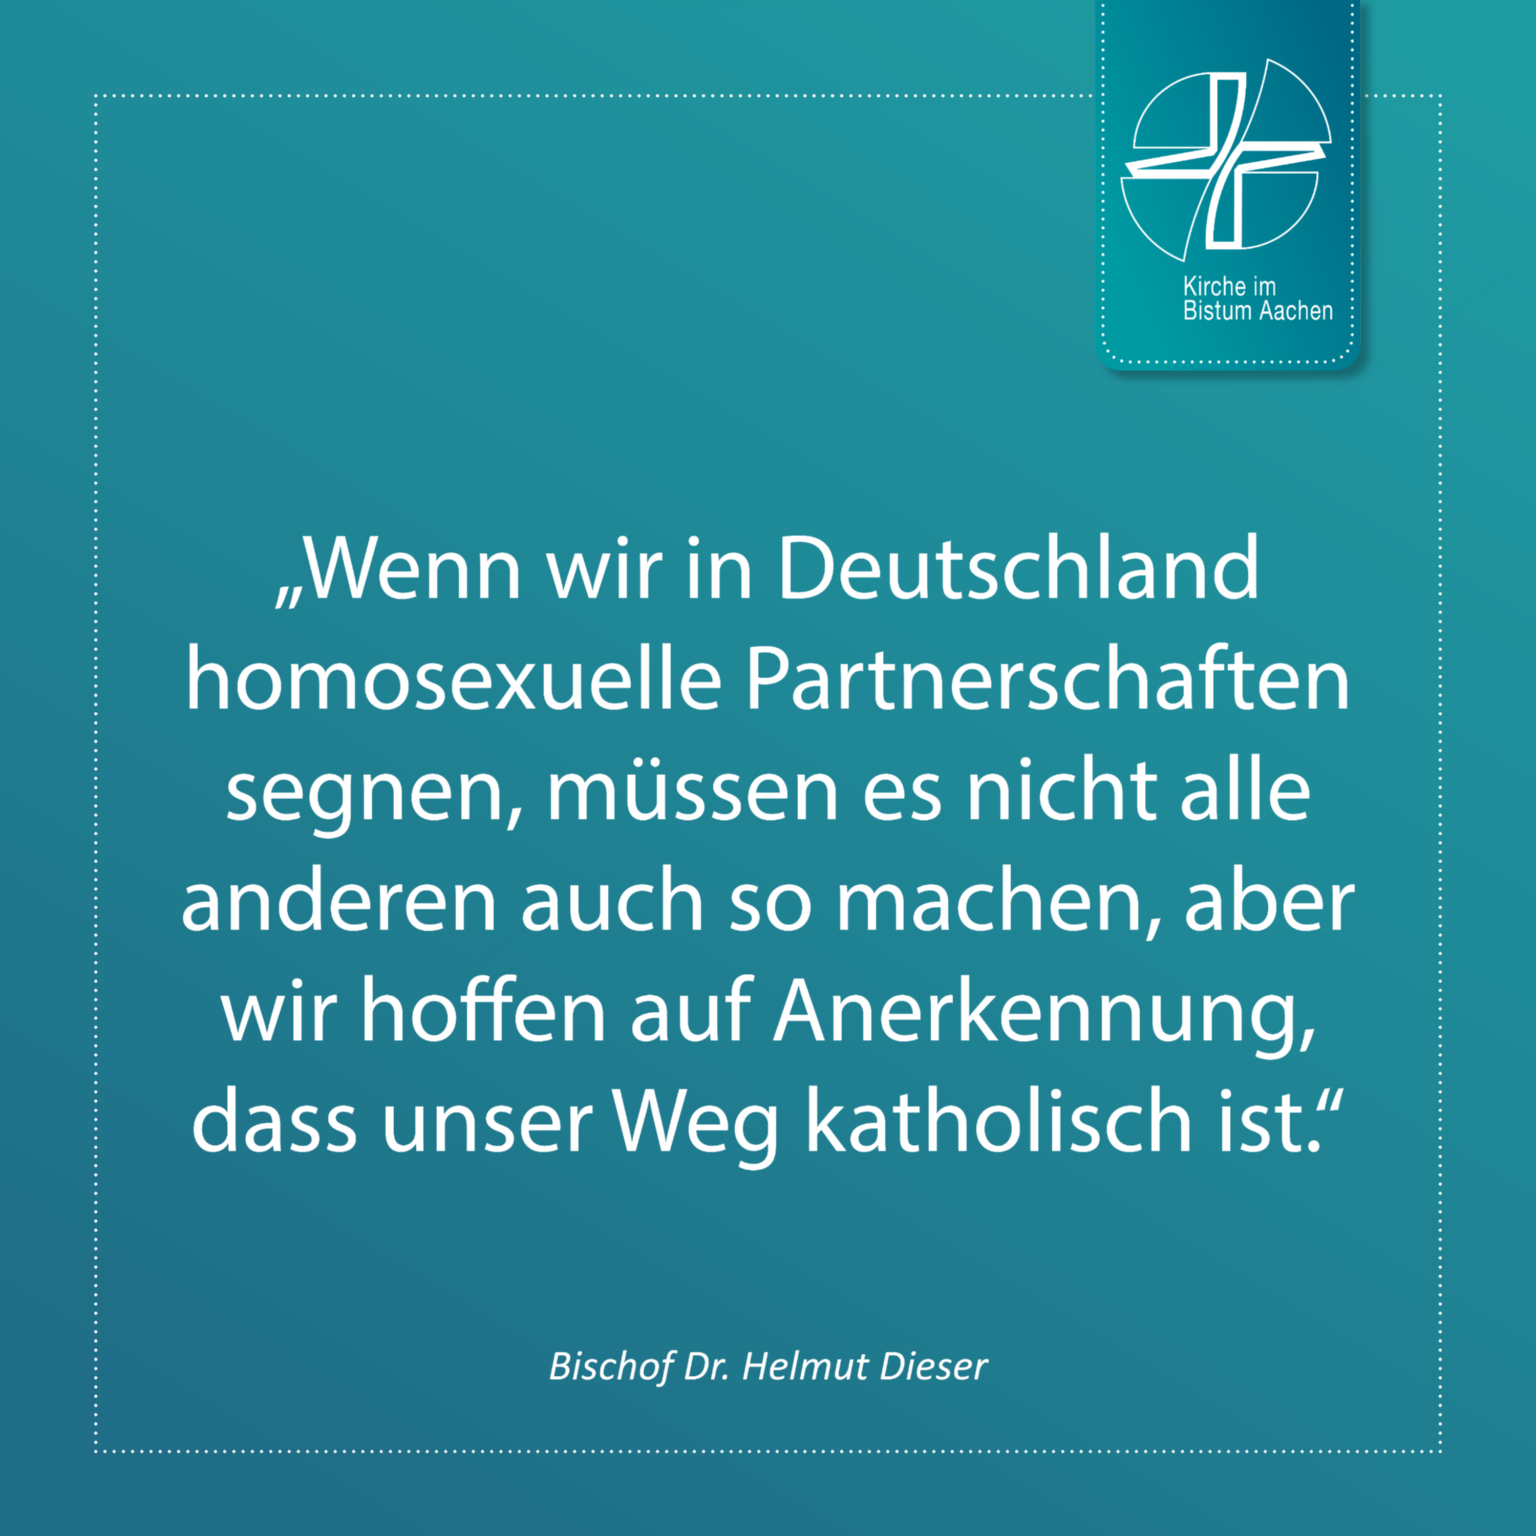 Bischof Dr. Helmut Dieser - Zitat 12 (c) Bistum Aachen